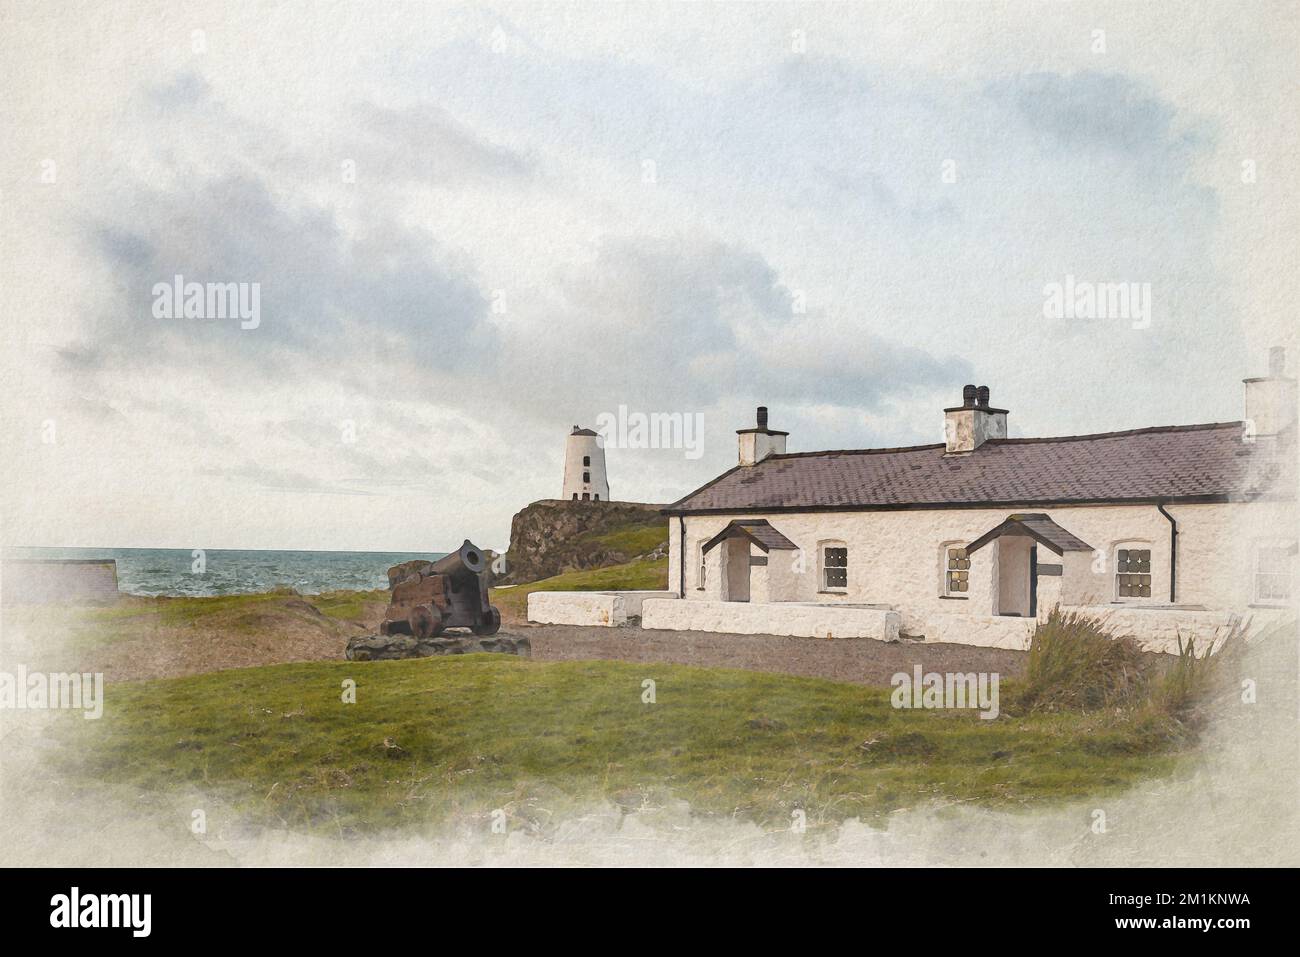 Peinture numérique aquarelle des cottages du pilote et traversée à Ynys Llanddwyn sur Anglesey, au pays de Galles, au Royaume-Uni Banque D'Images